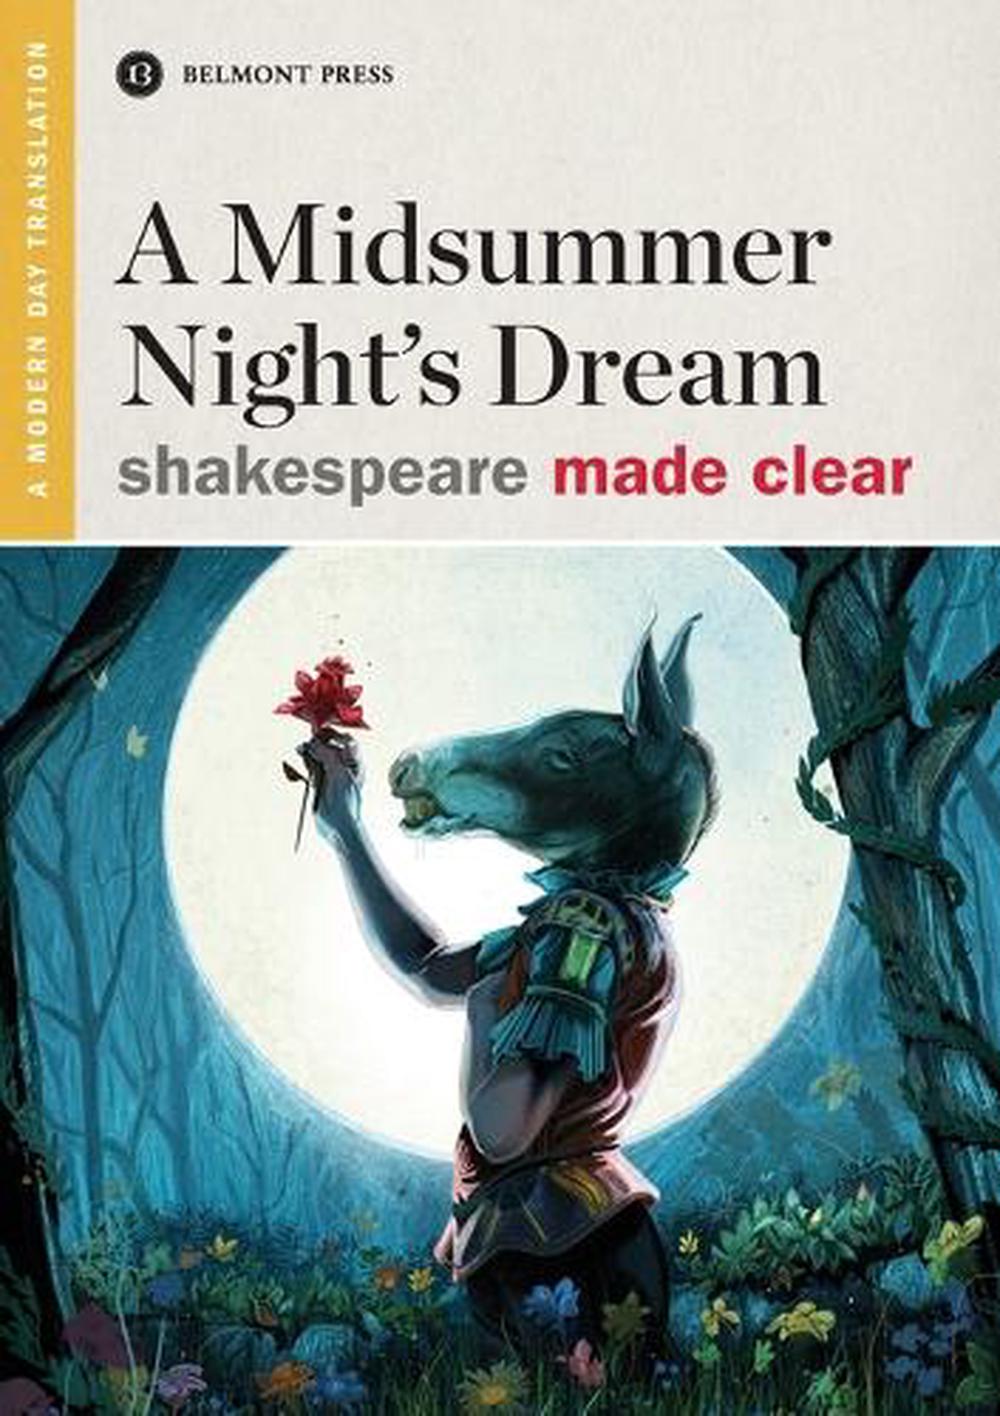 magic in a midsummer night's dream essay